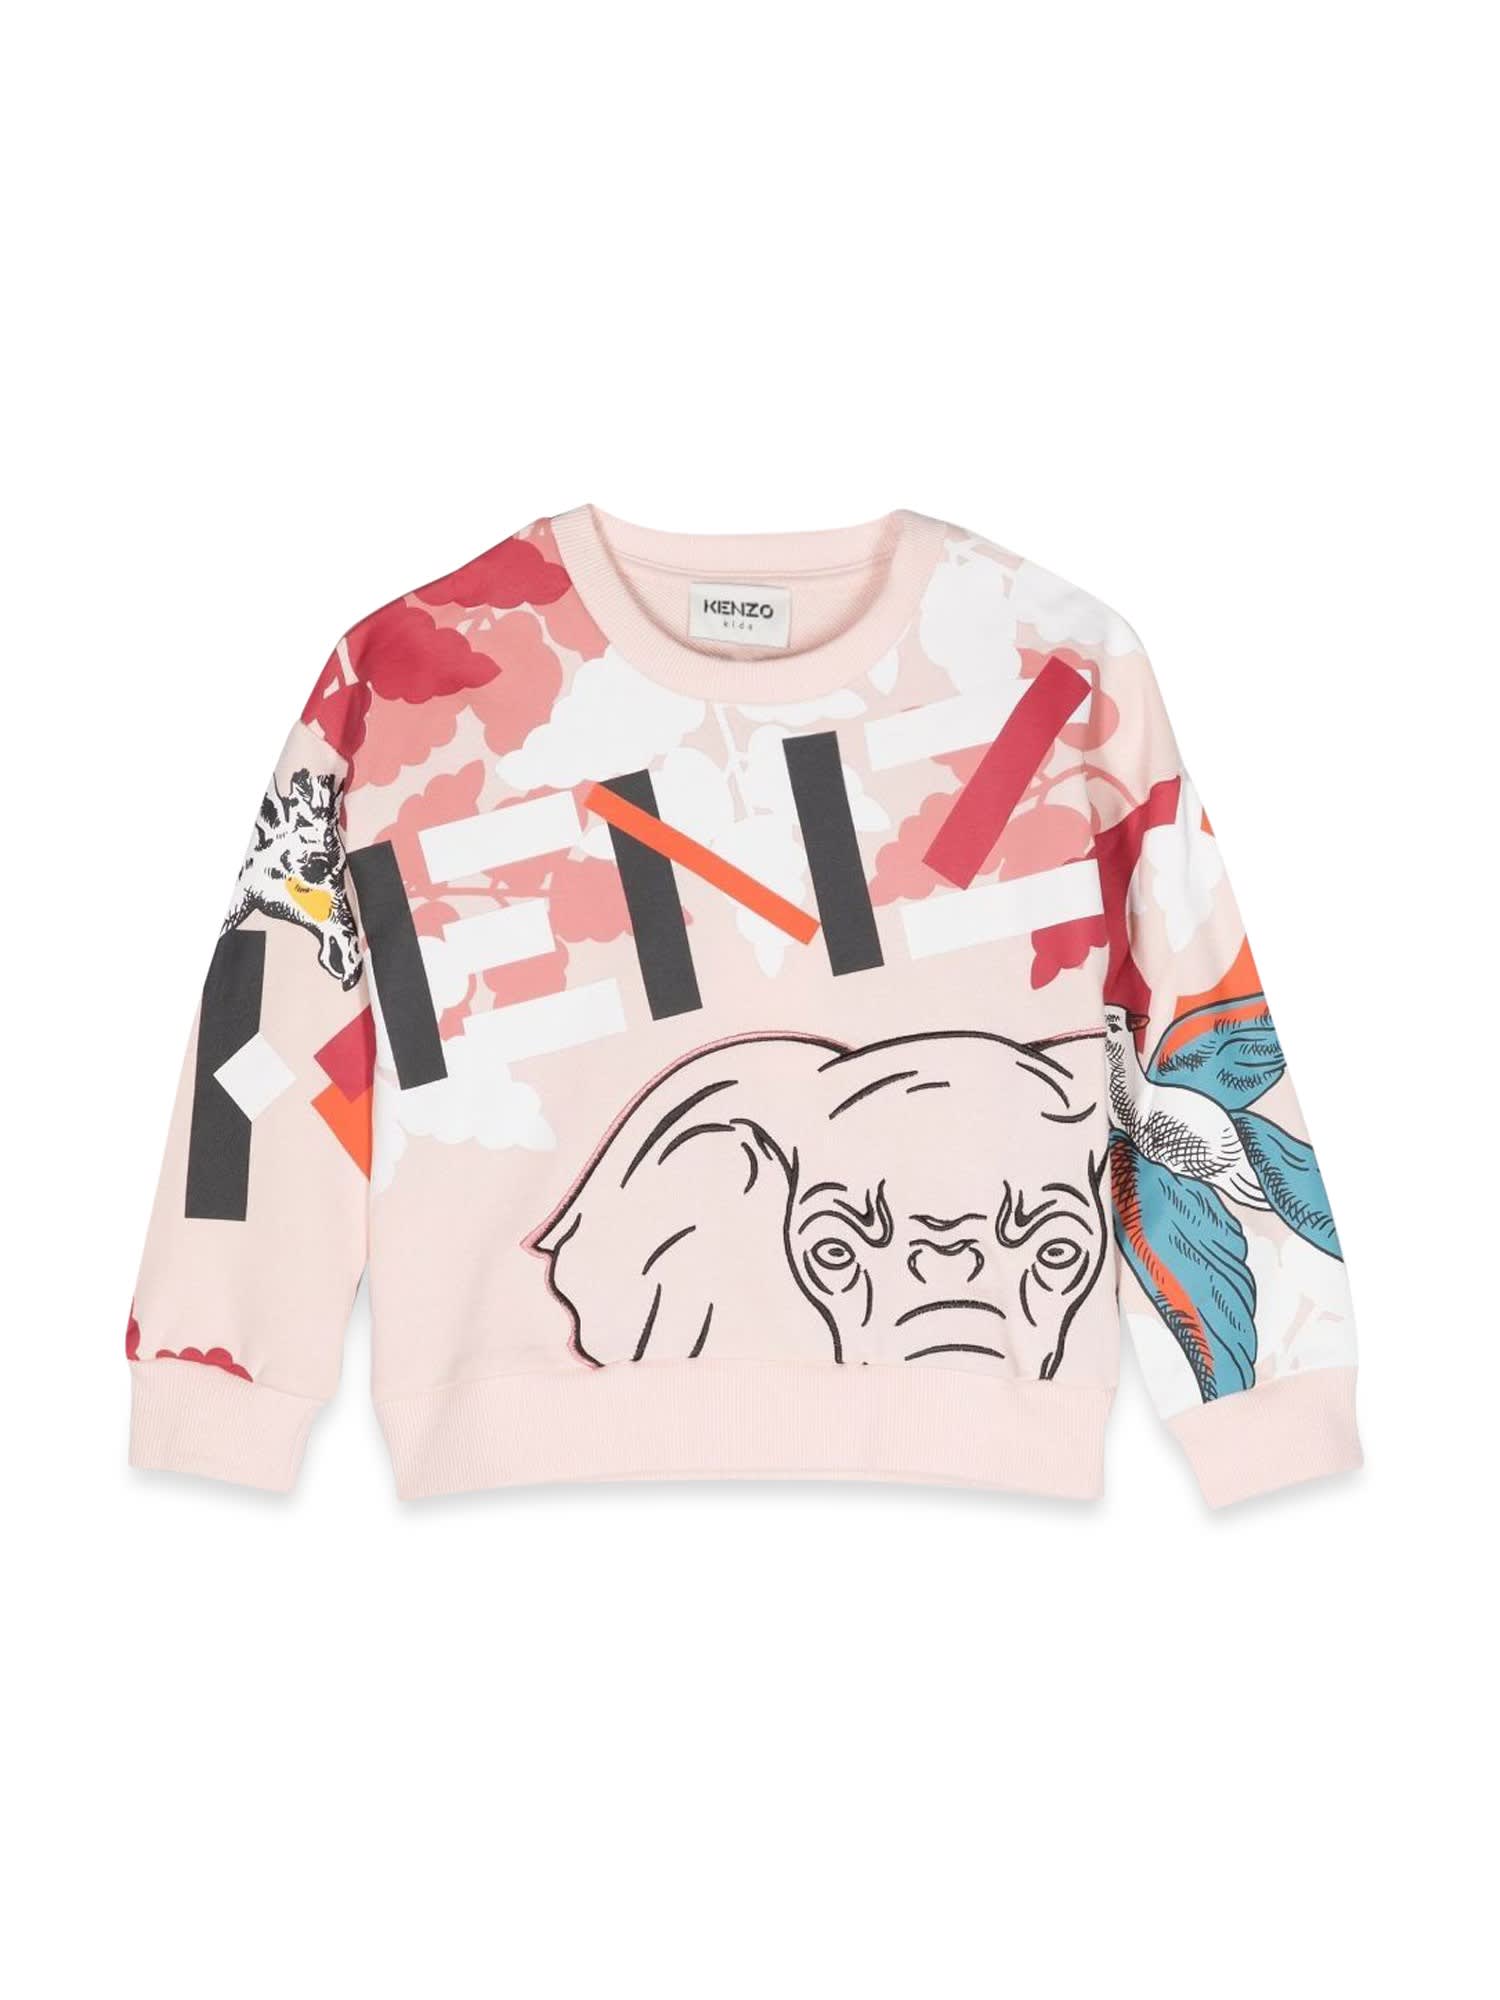 Kenzo Elephant Crewneck Sweatshirt